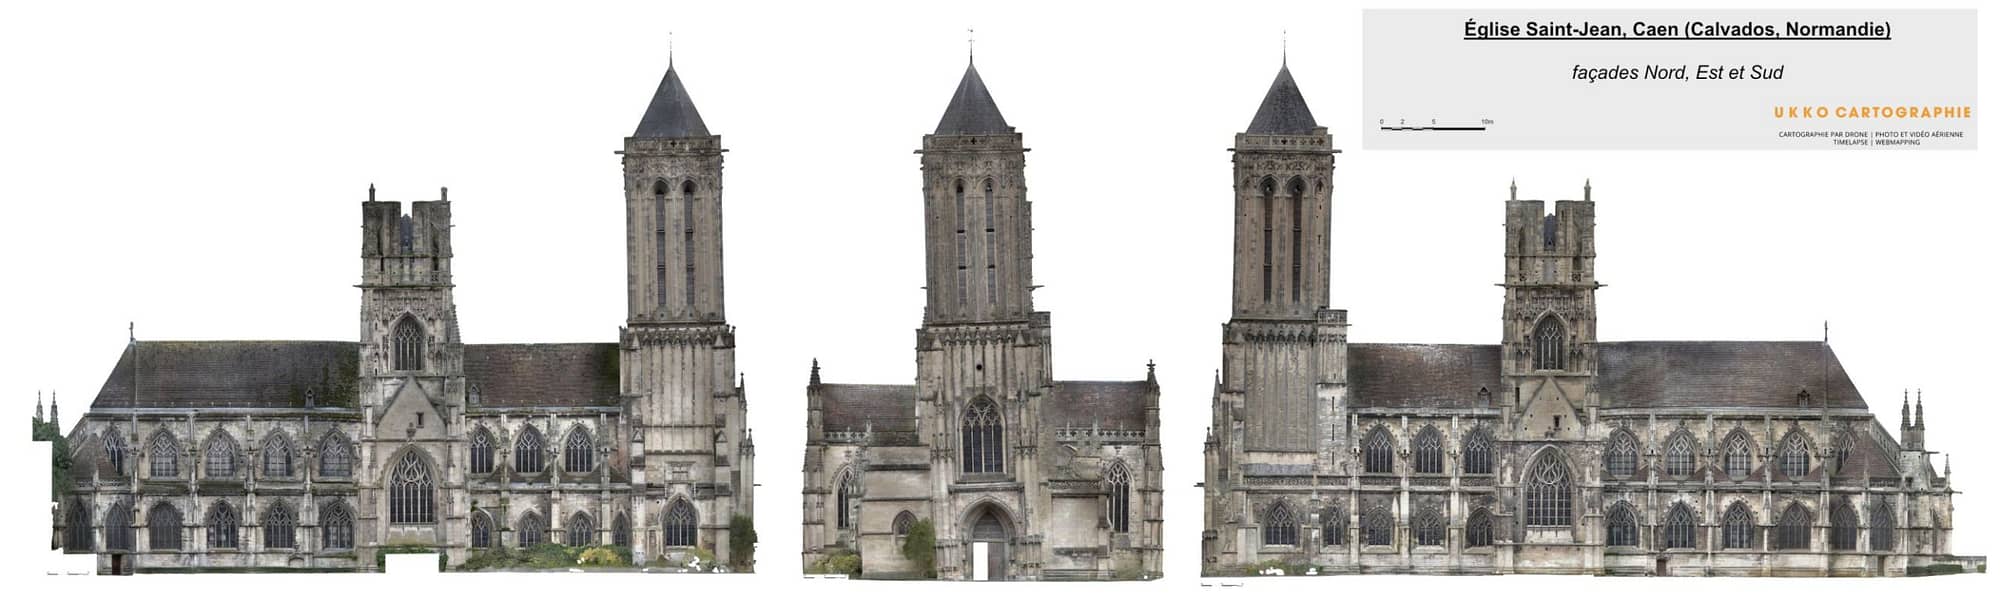 façades de l'église saint-jean